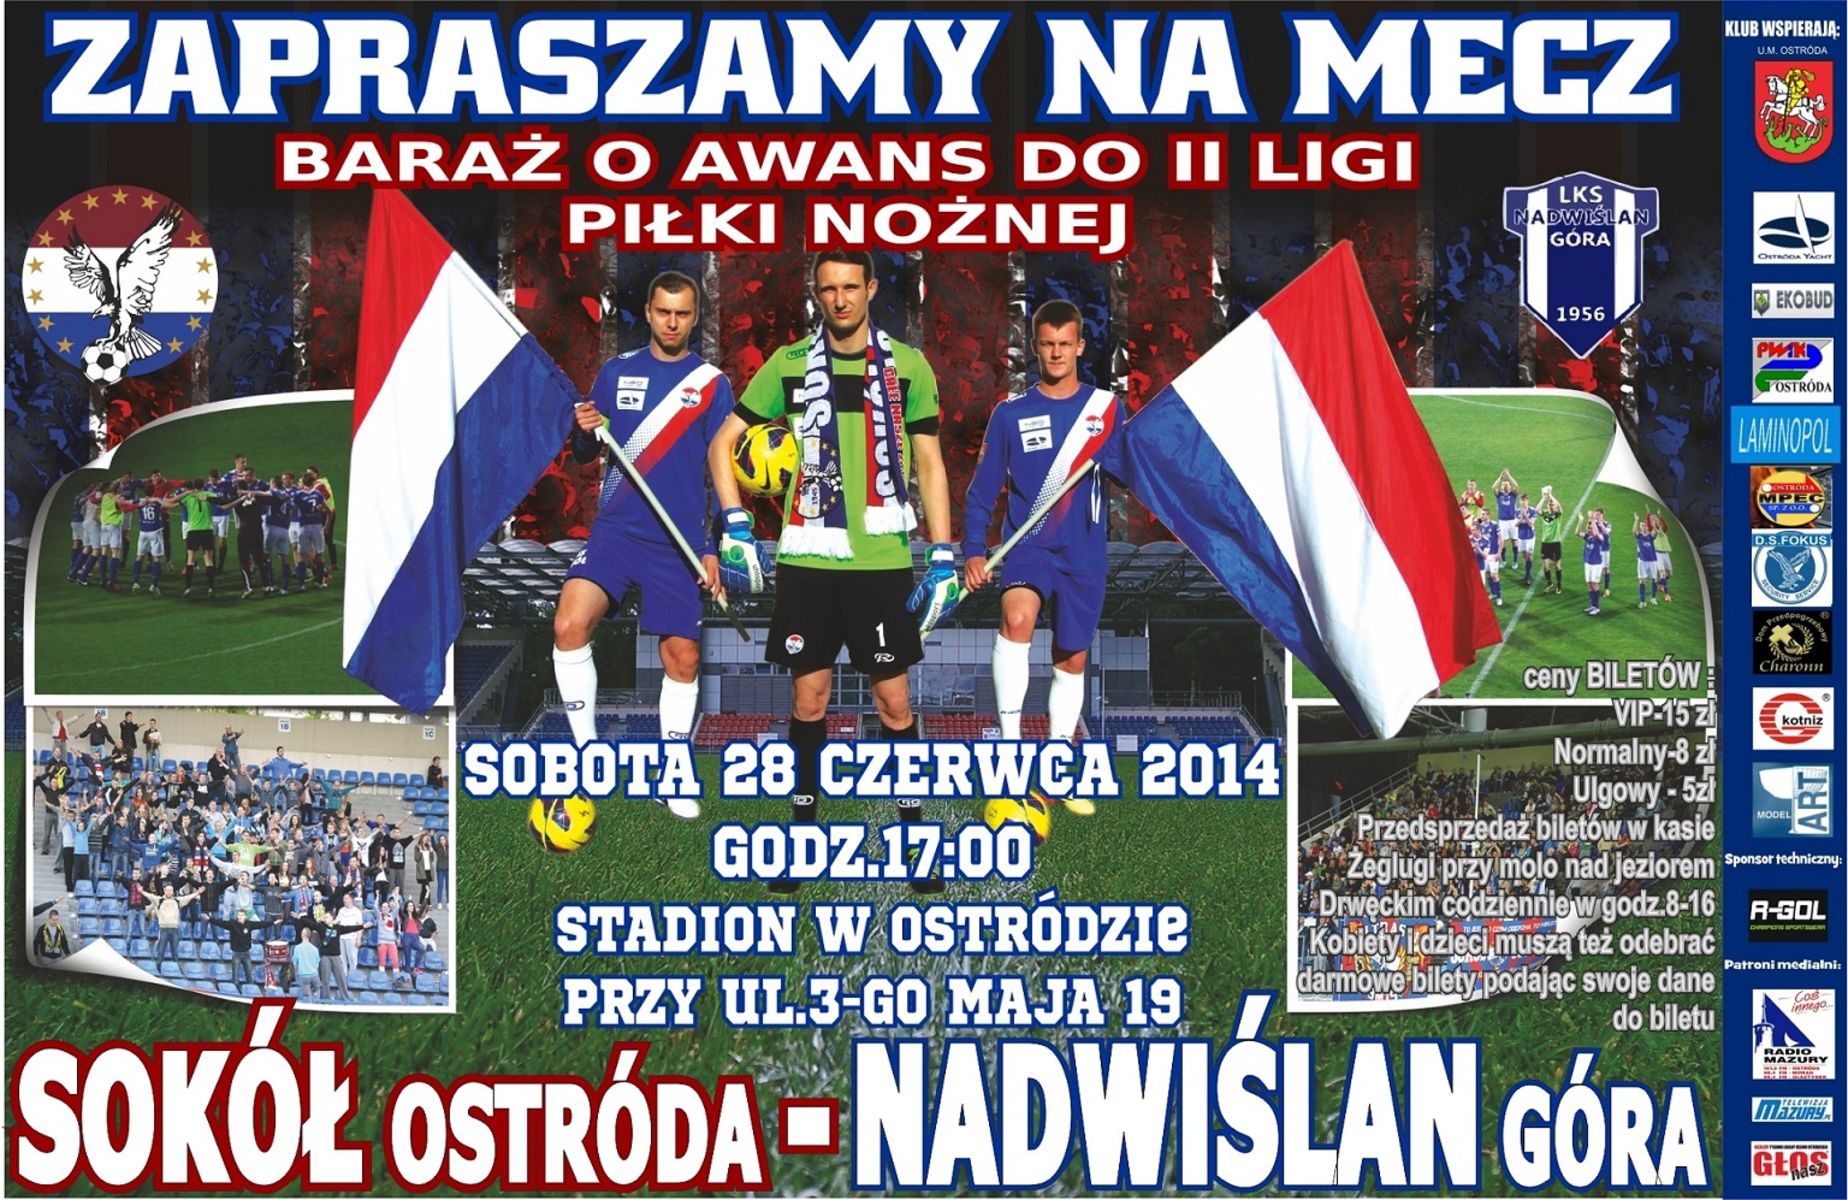 Plakat promujący mecz Sokół Ostróda - Nadwiślan Góra. 